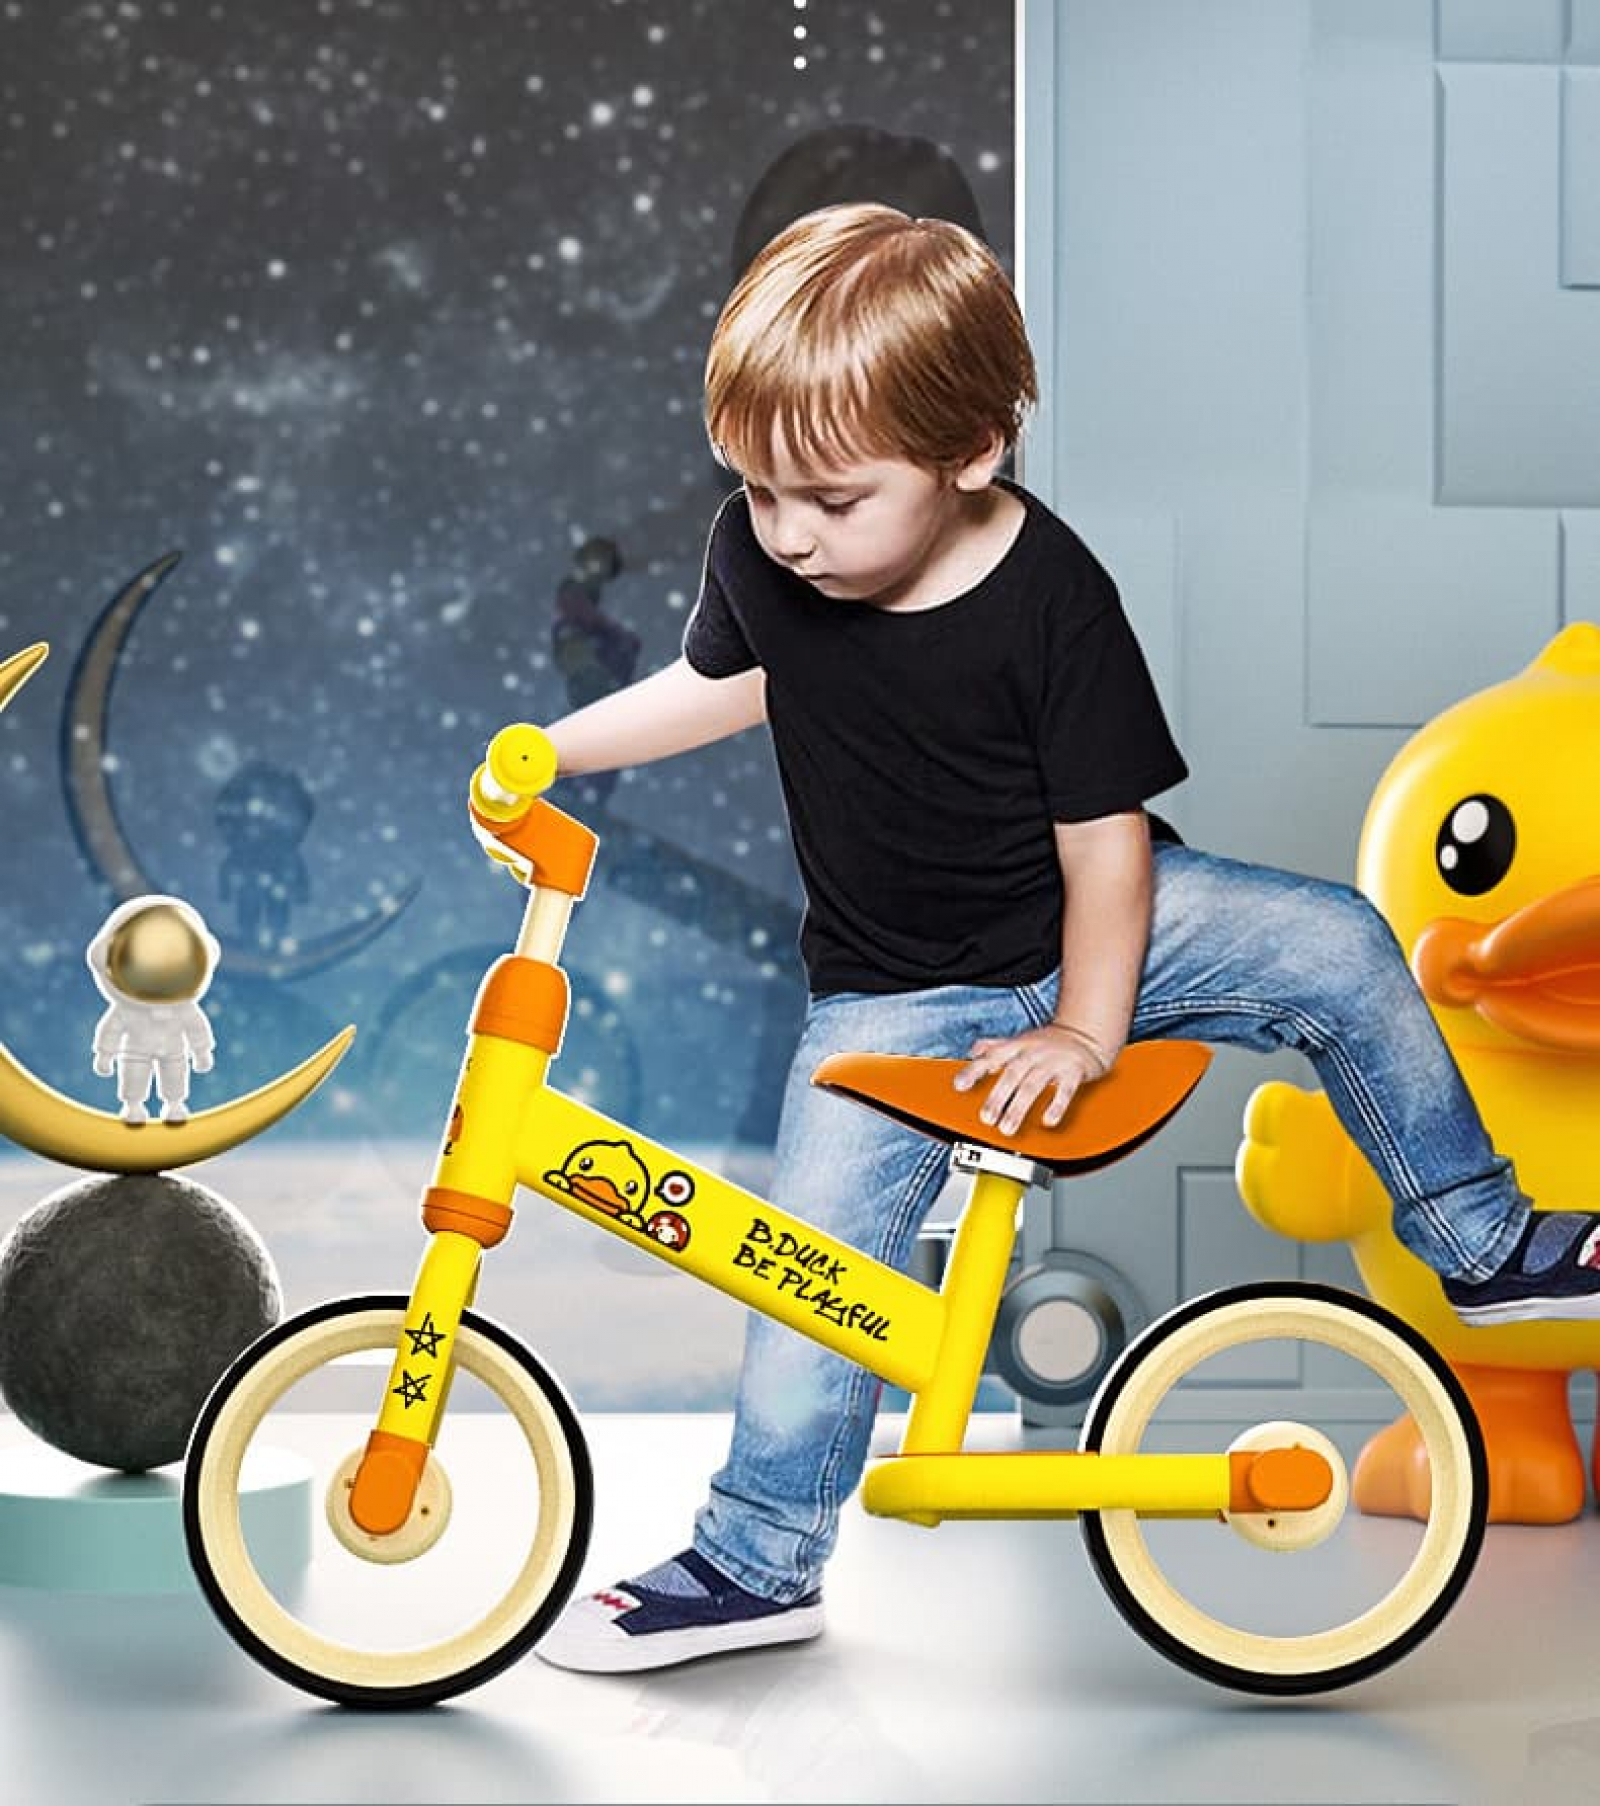 Nên chọn xe chòi chân hay xe đạp 3 bánh cho bé từ 1 - 4 tuổi?